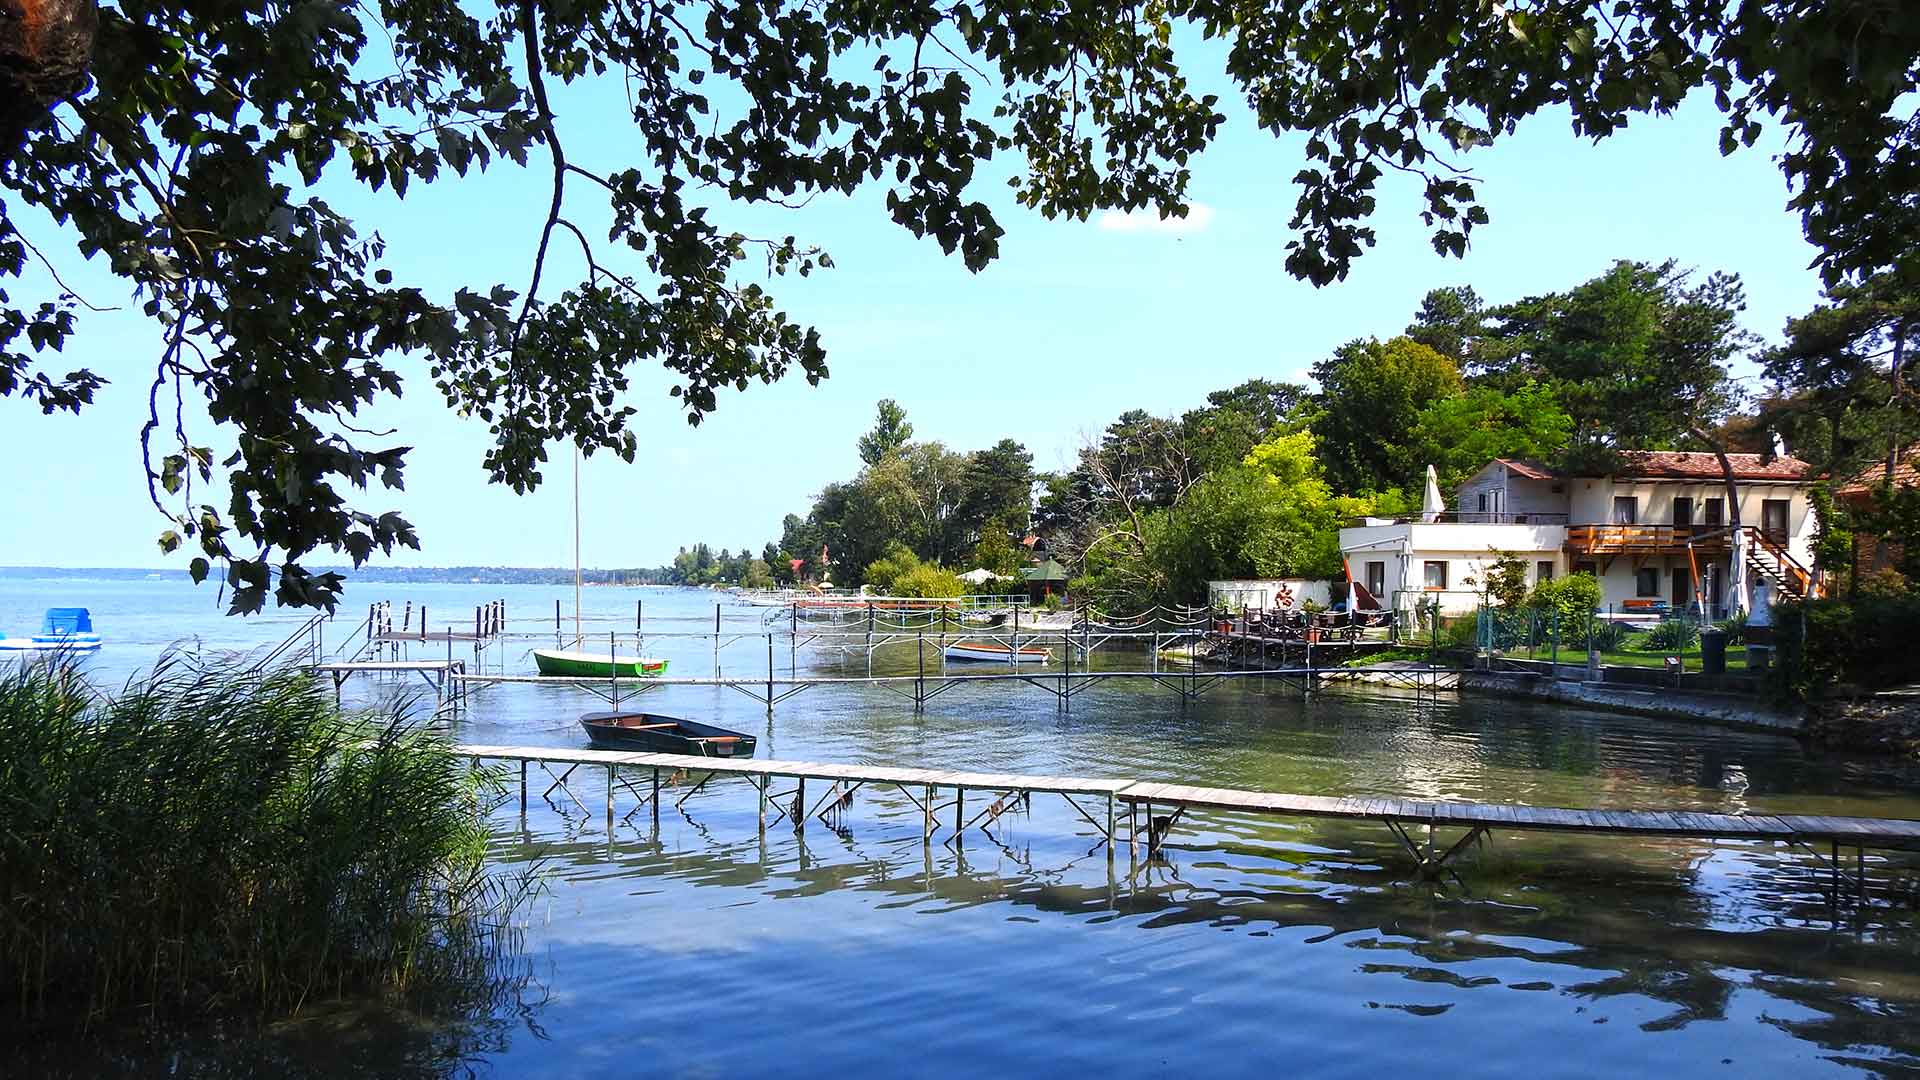 Vízparti nyaraló, a Balaton déli partján eladó.